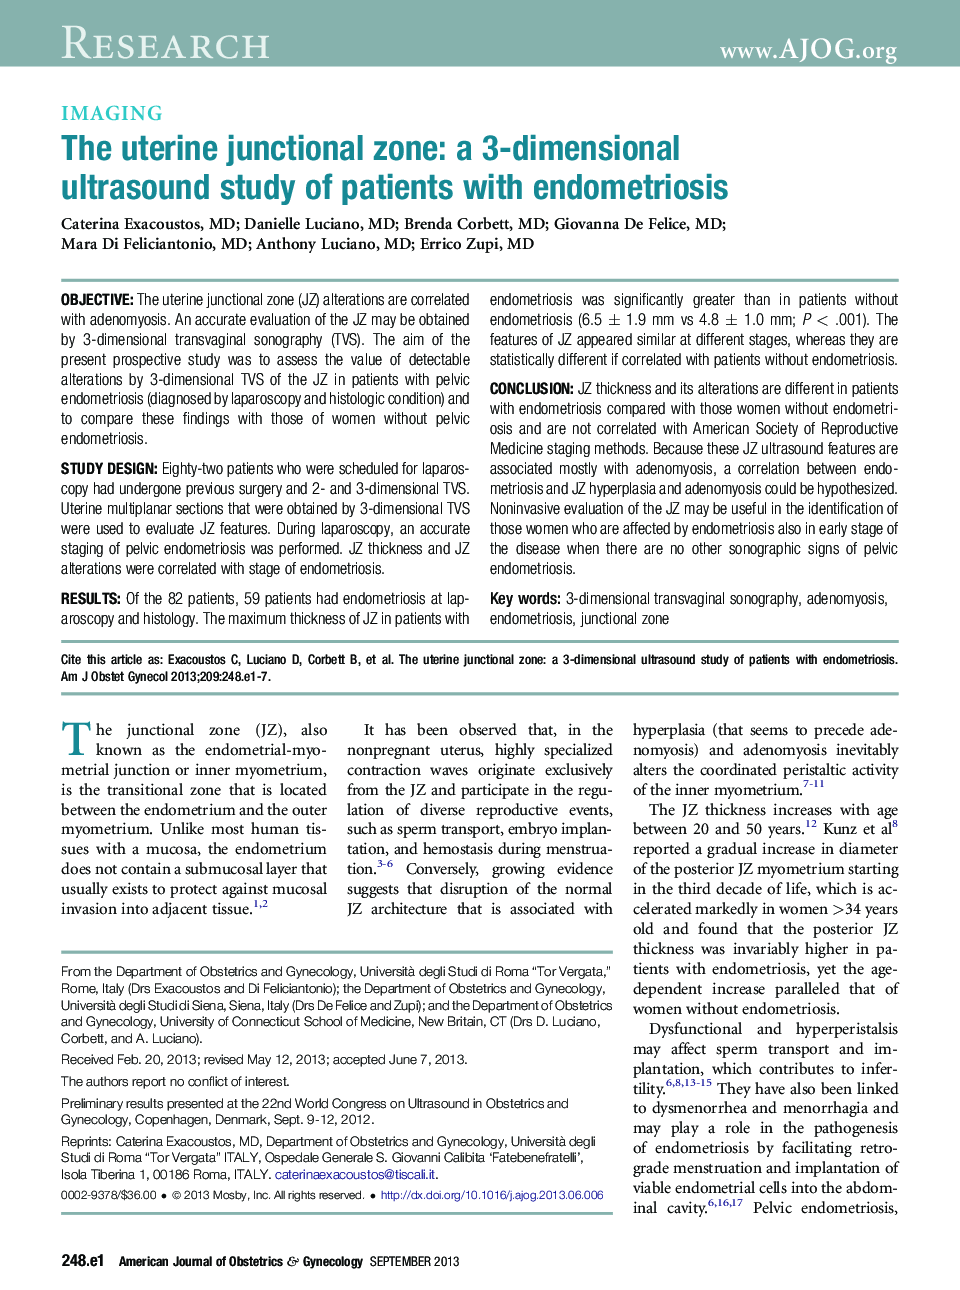 منطقه یونیکس رحم: یک مطالعه سونوگرافی سه بعدی در بیماران مبتلا به آندومتریوز است 